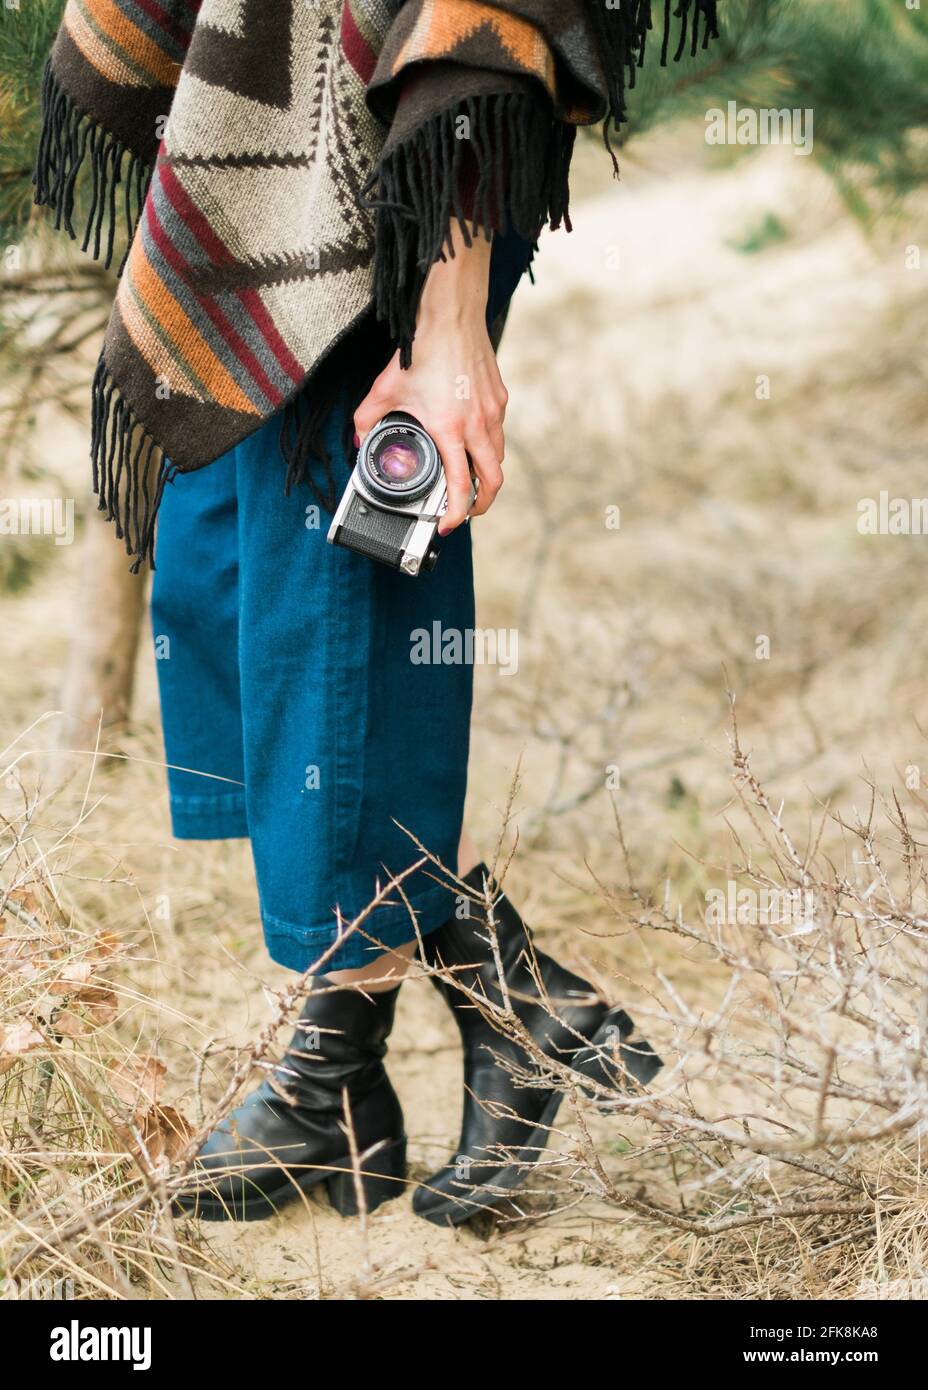 Jeune femme photographiant dans une forêt avec un appareil photo d'époque. Kinfolk / style extérieur. Banque D'Images